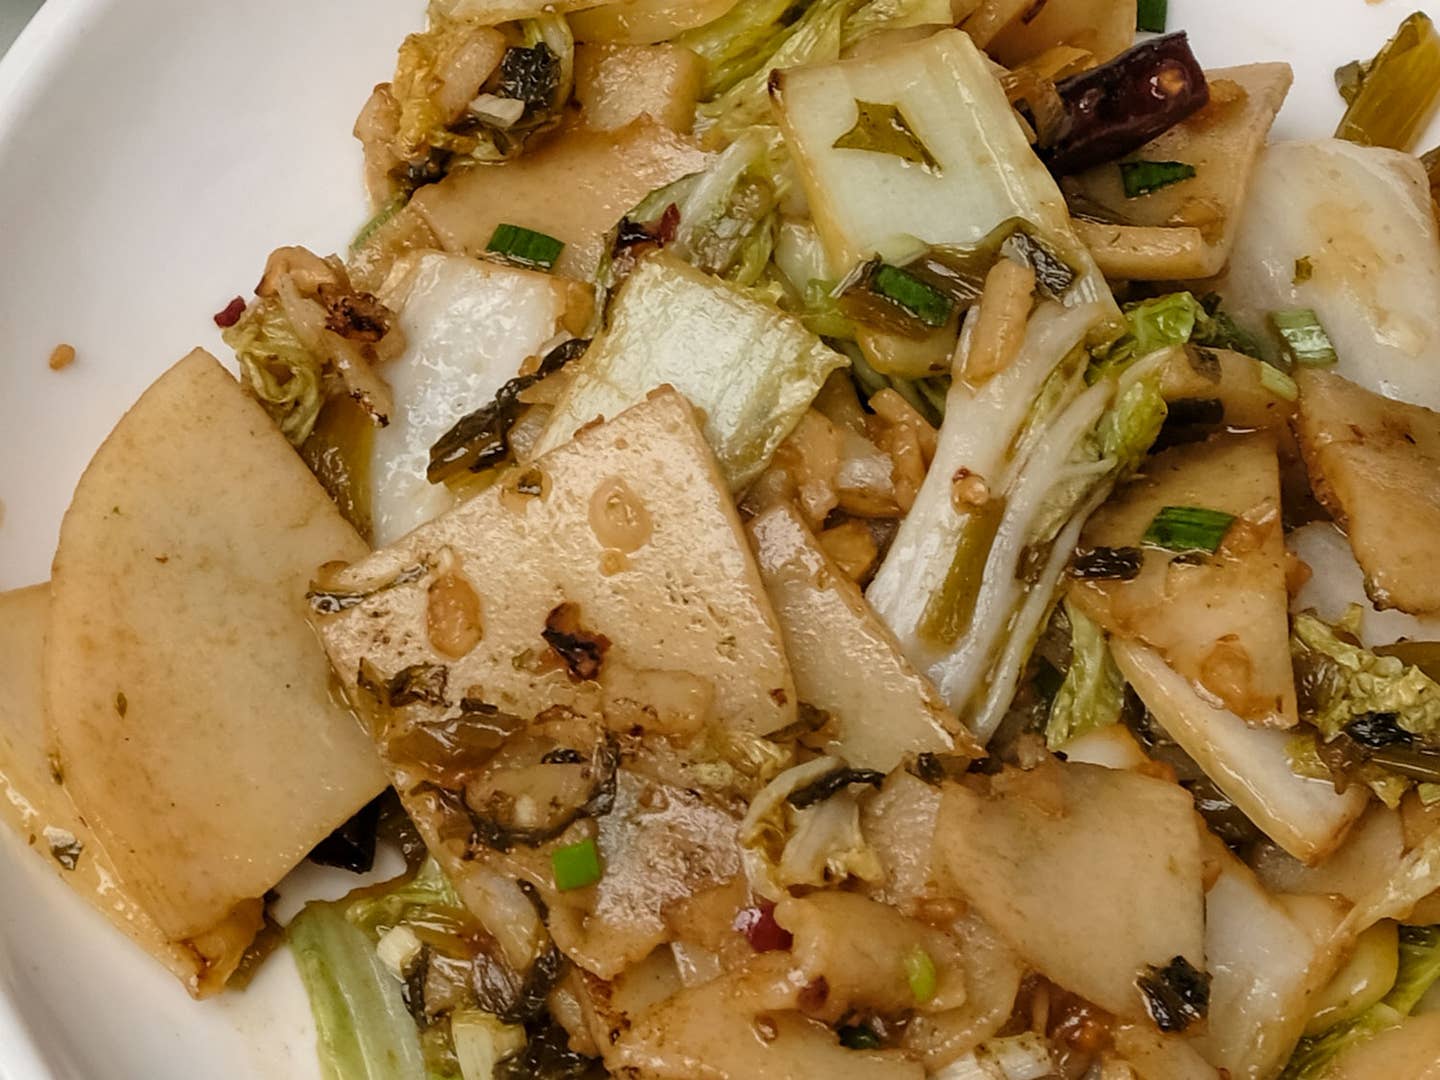 Vegetarian Stir-Fried Chinese Rice Cakes (Su Chao Erkuai)